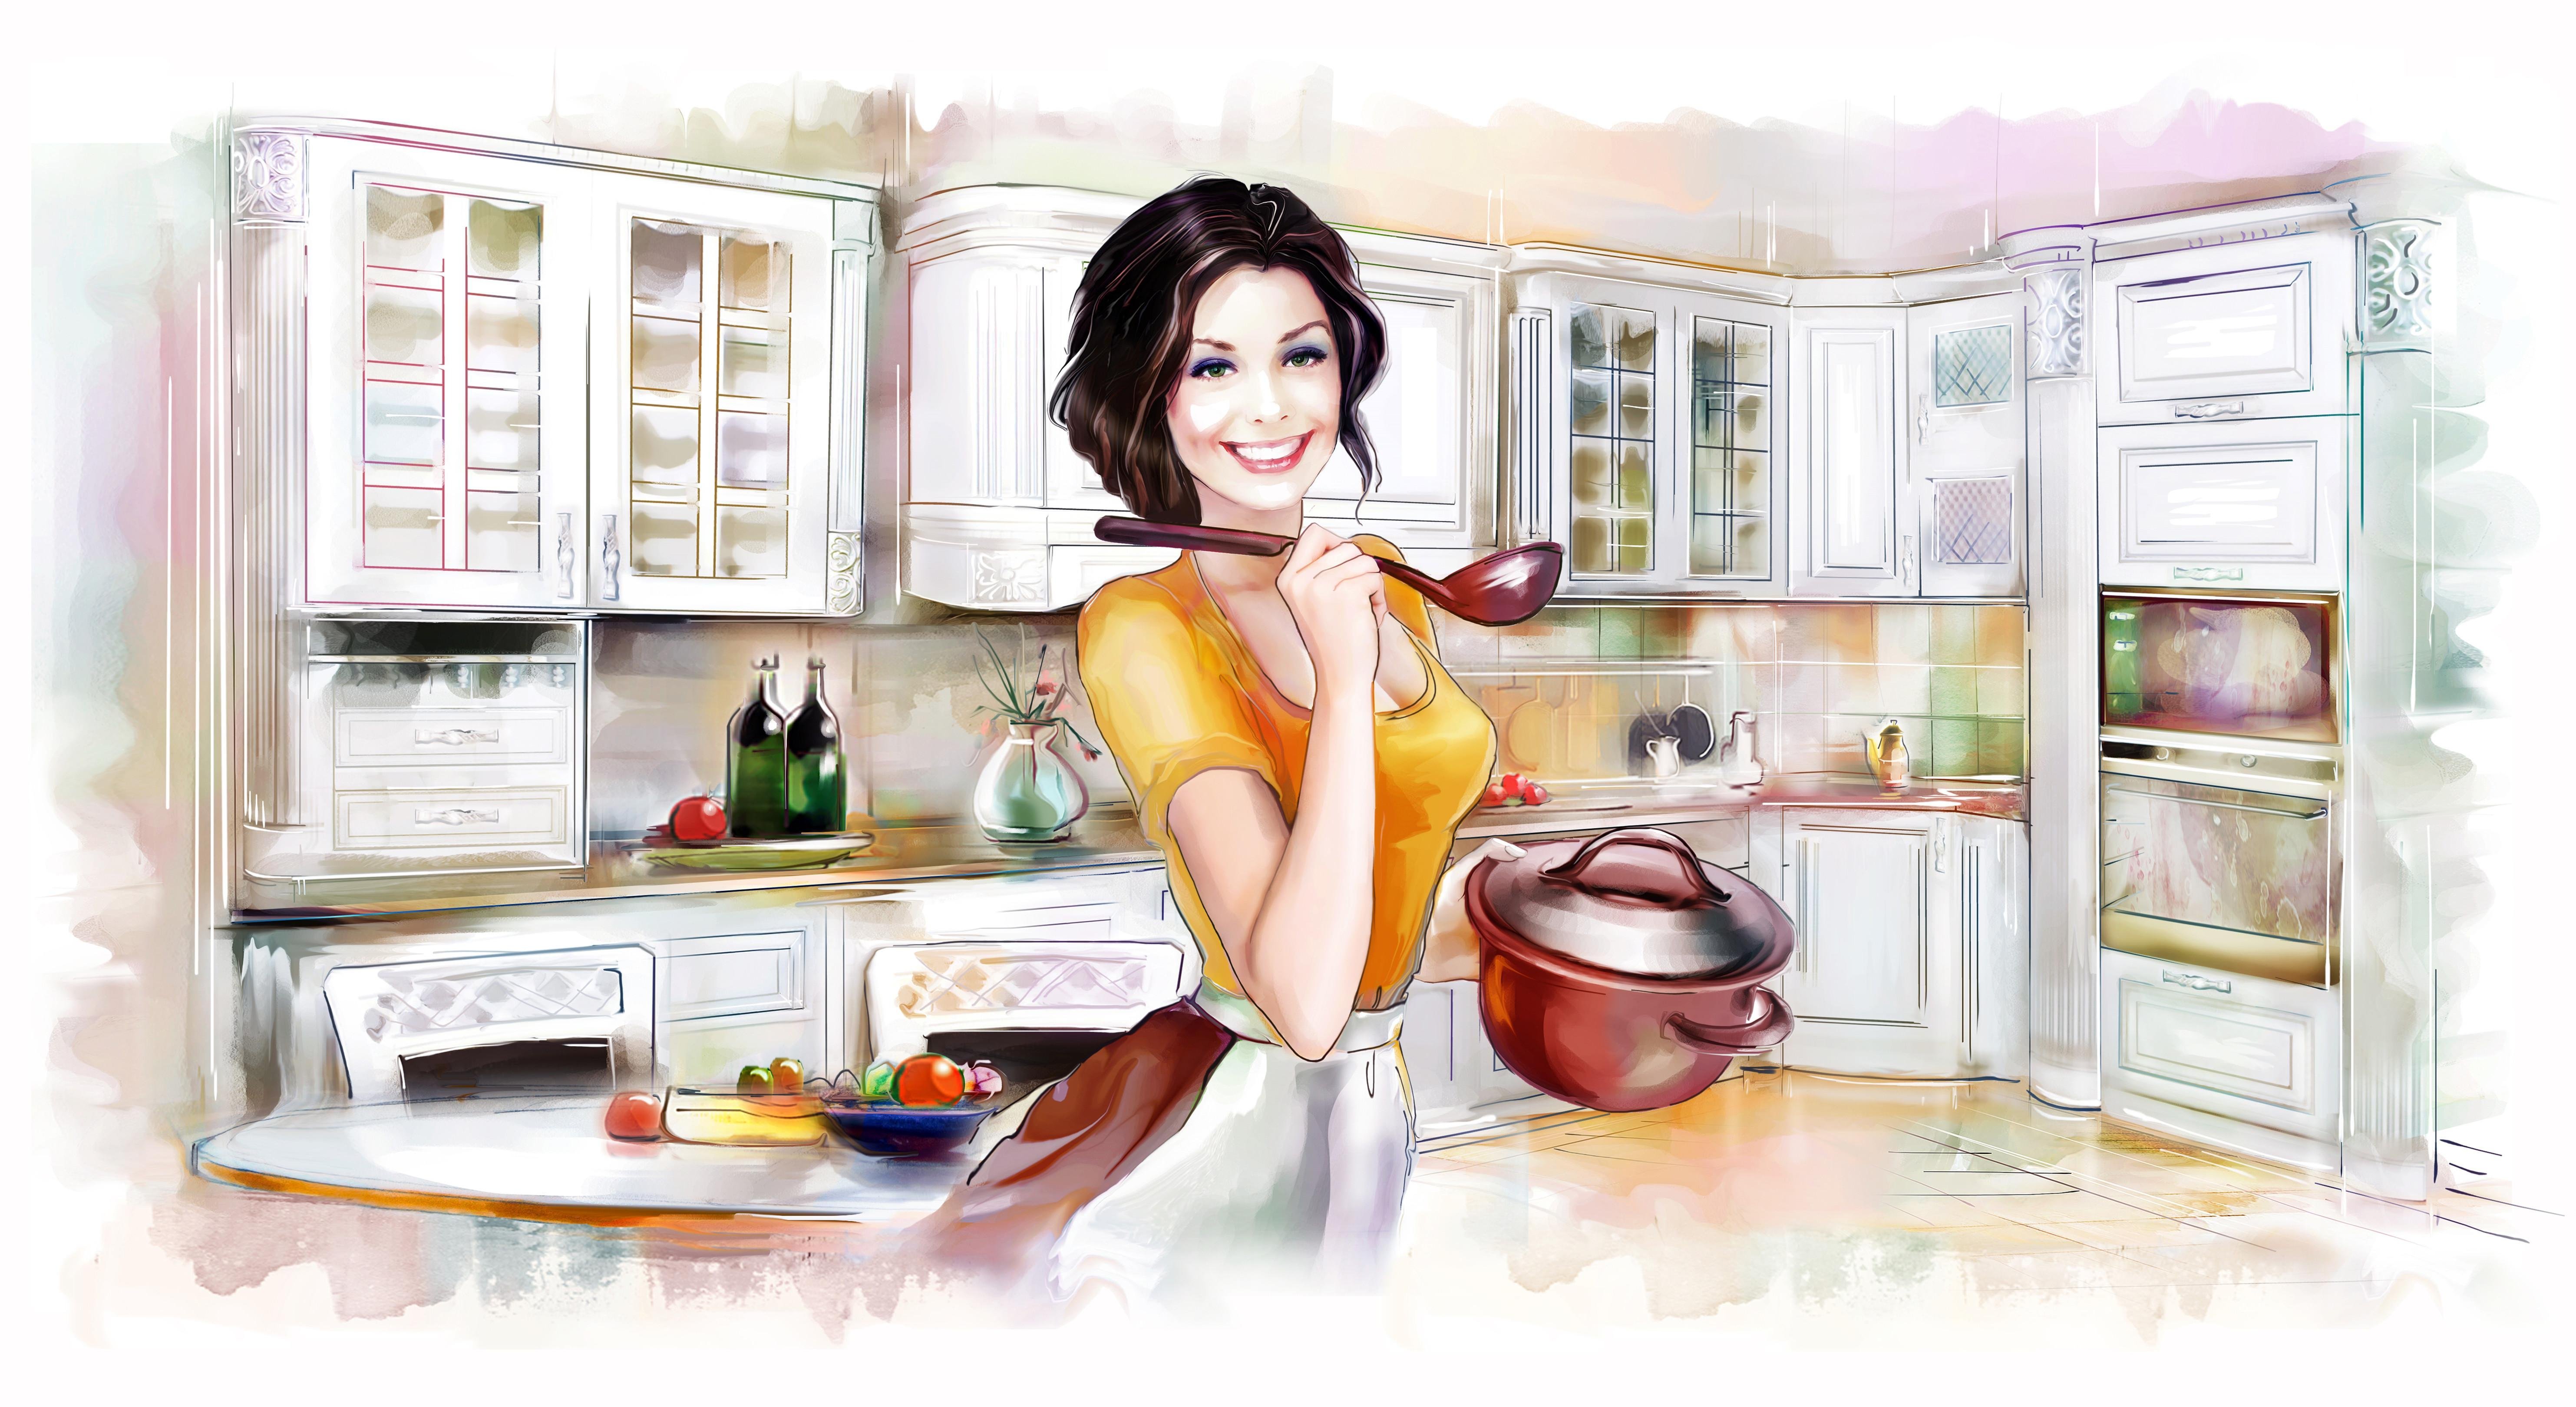 Рамис хозяйка маленького дома. Хозяюшка на кухне иллюстрация. Женщина на кухне. Хозяйка на кухне. Женщина хозяйка в доме.